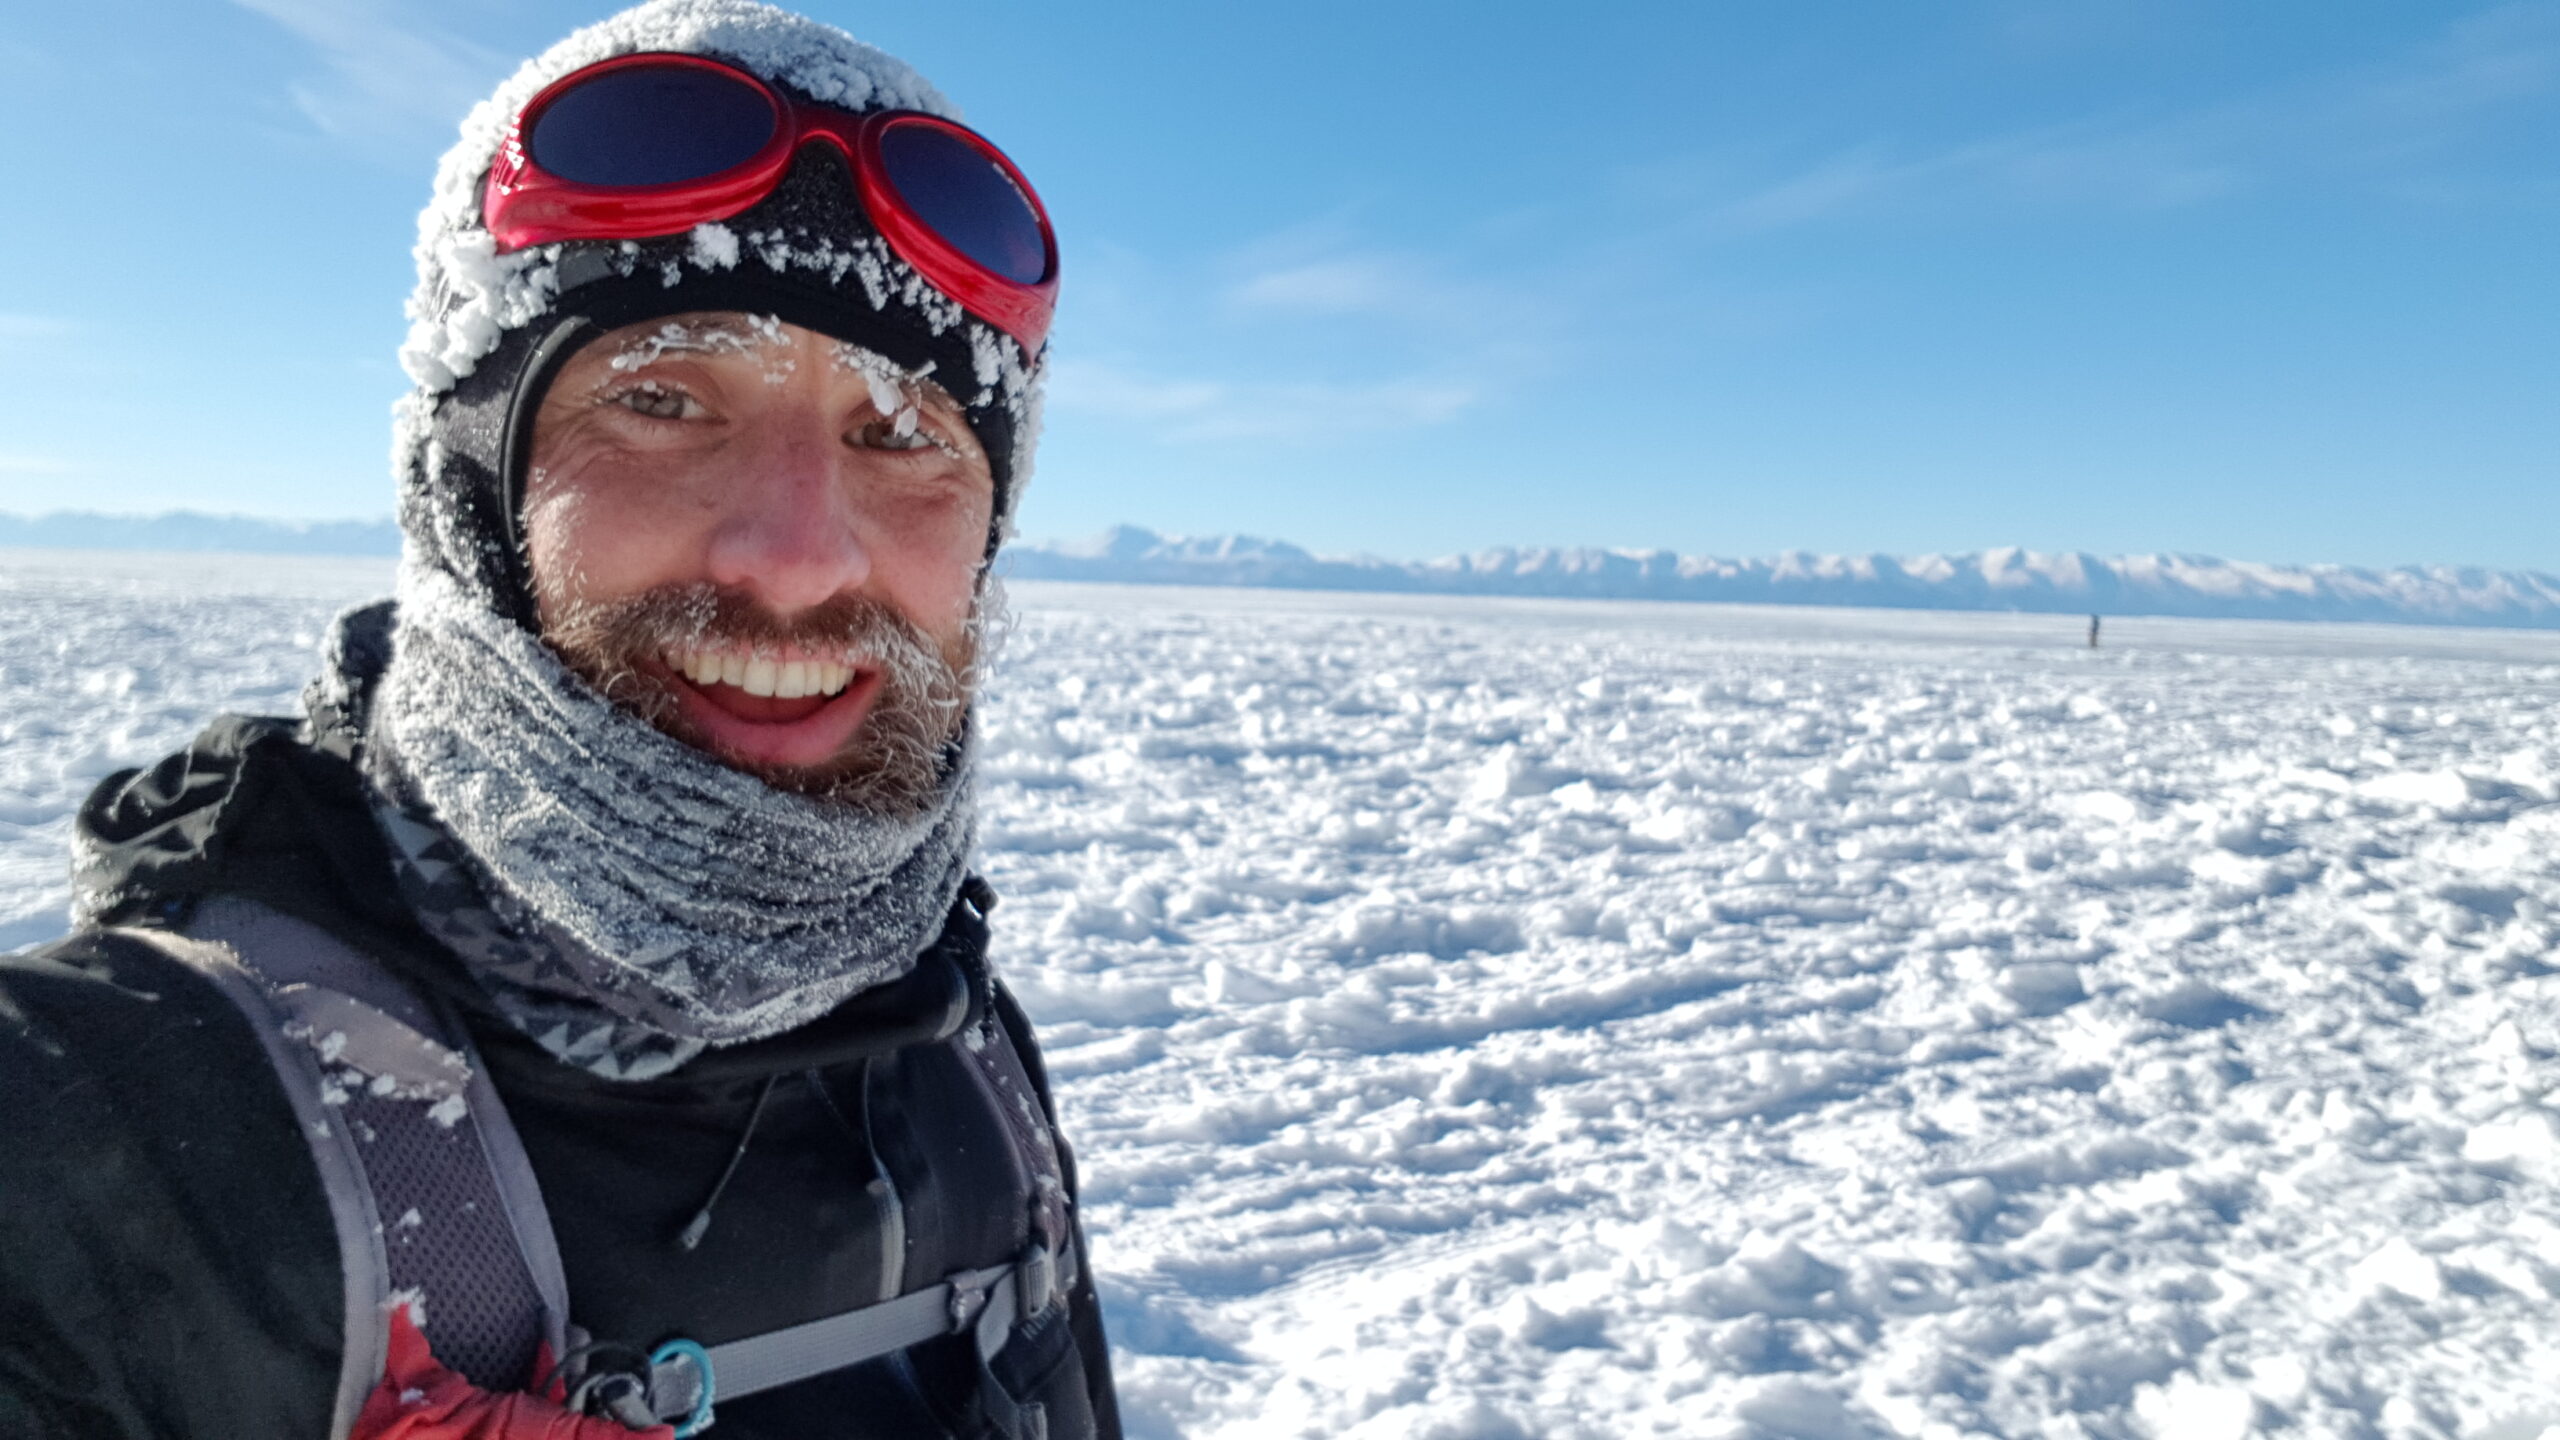 100 miles of ice – day one recap.